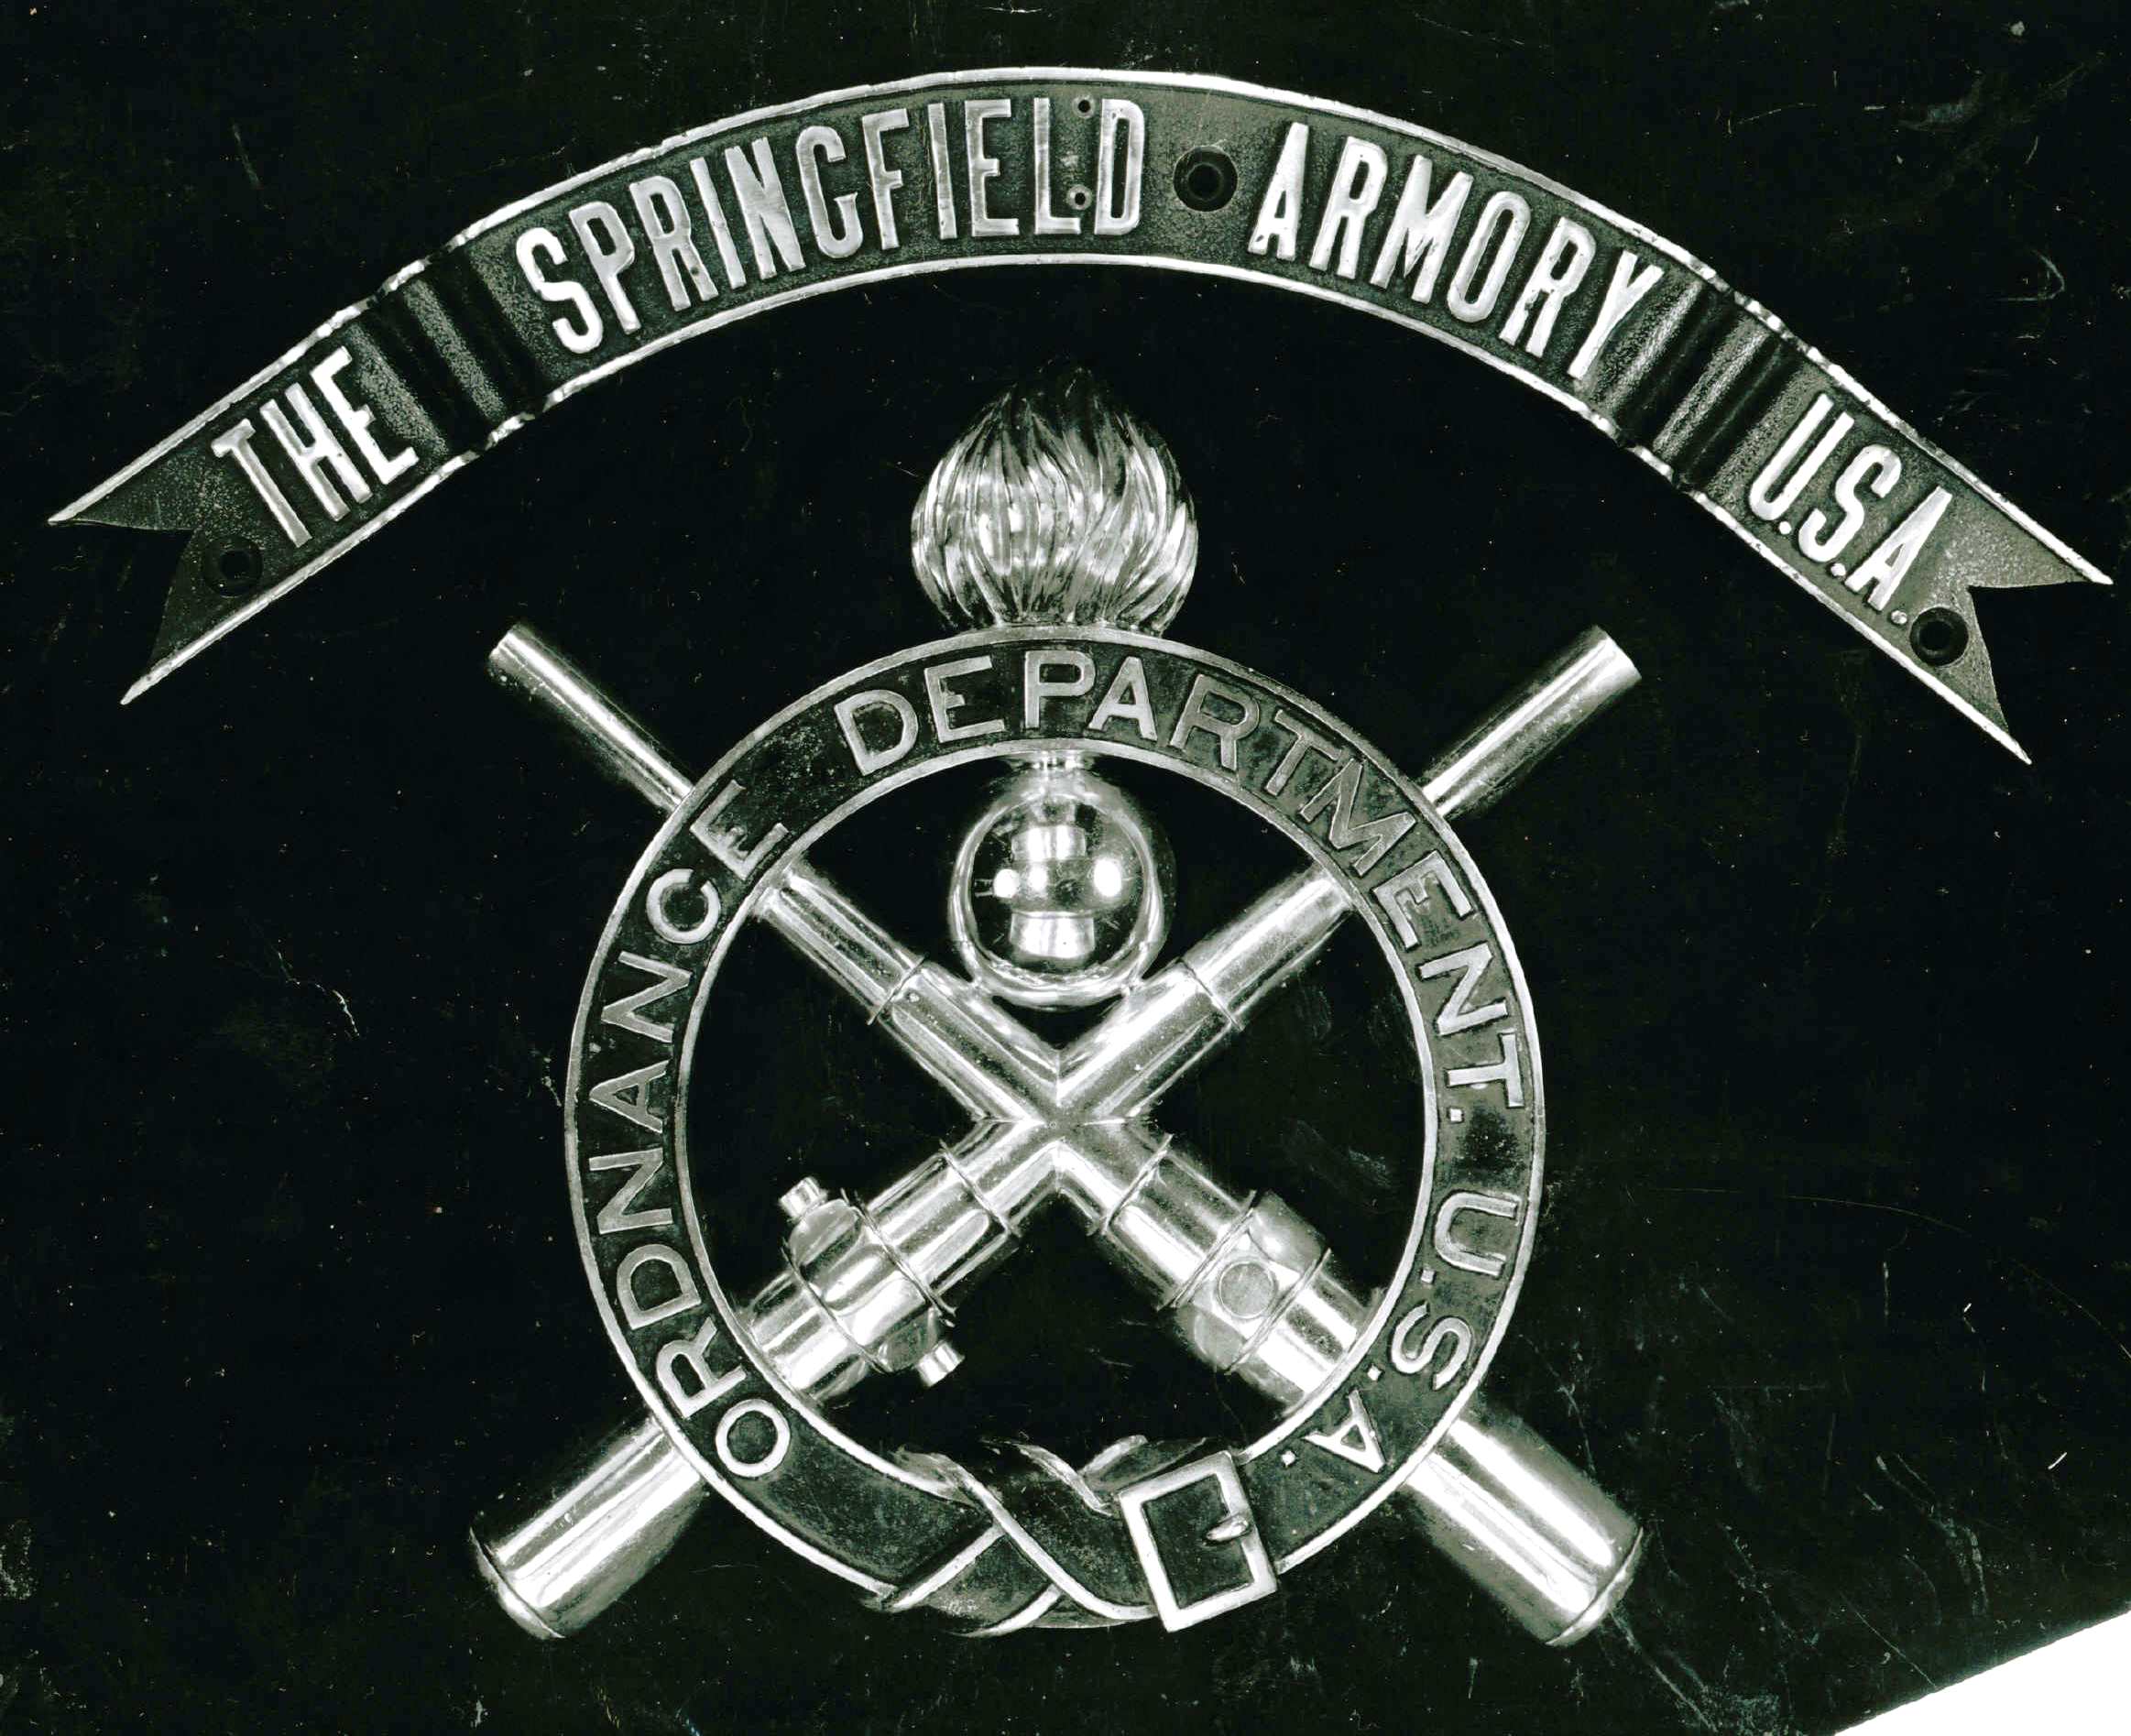 Springfield Armory USA Logo - Springfield armory Logos